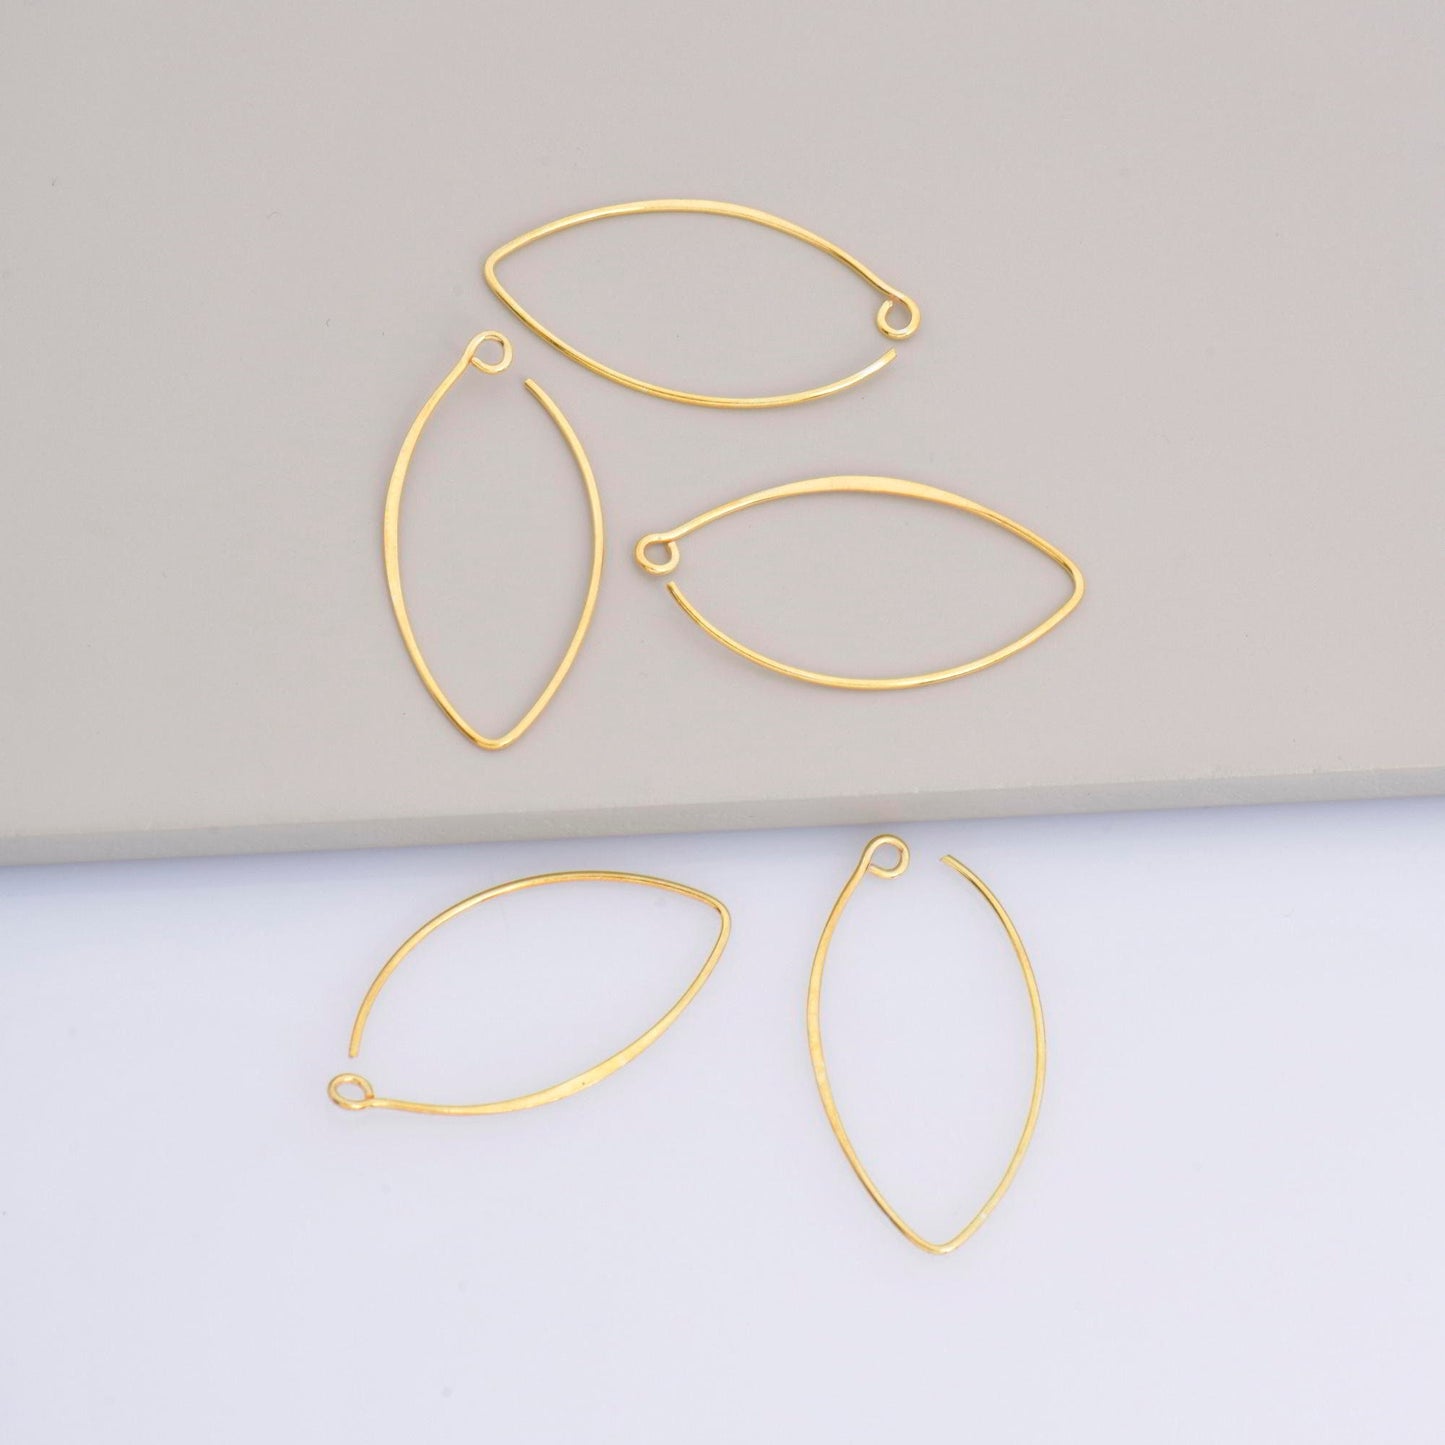 34 mm - 24K Gold Vermeil & Sterling Silver V Shape Ear Wires w Open Loop , Earring Hooks , Earring Making Supply, Findings, VM49B - M49B